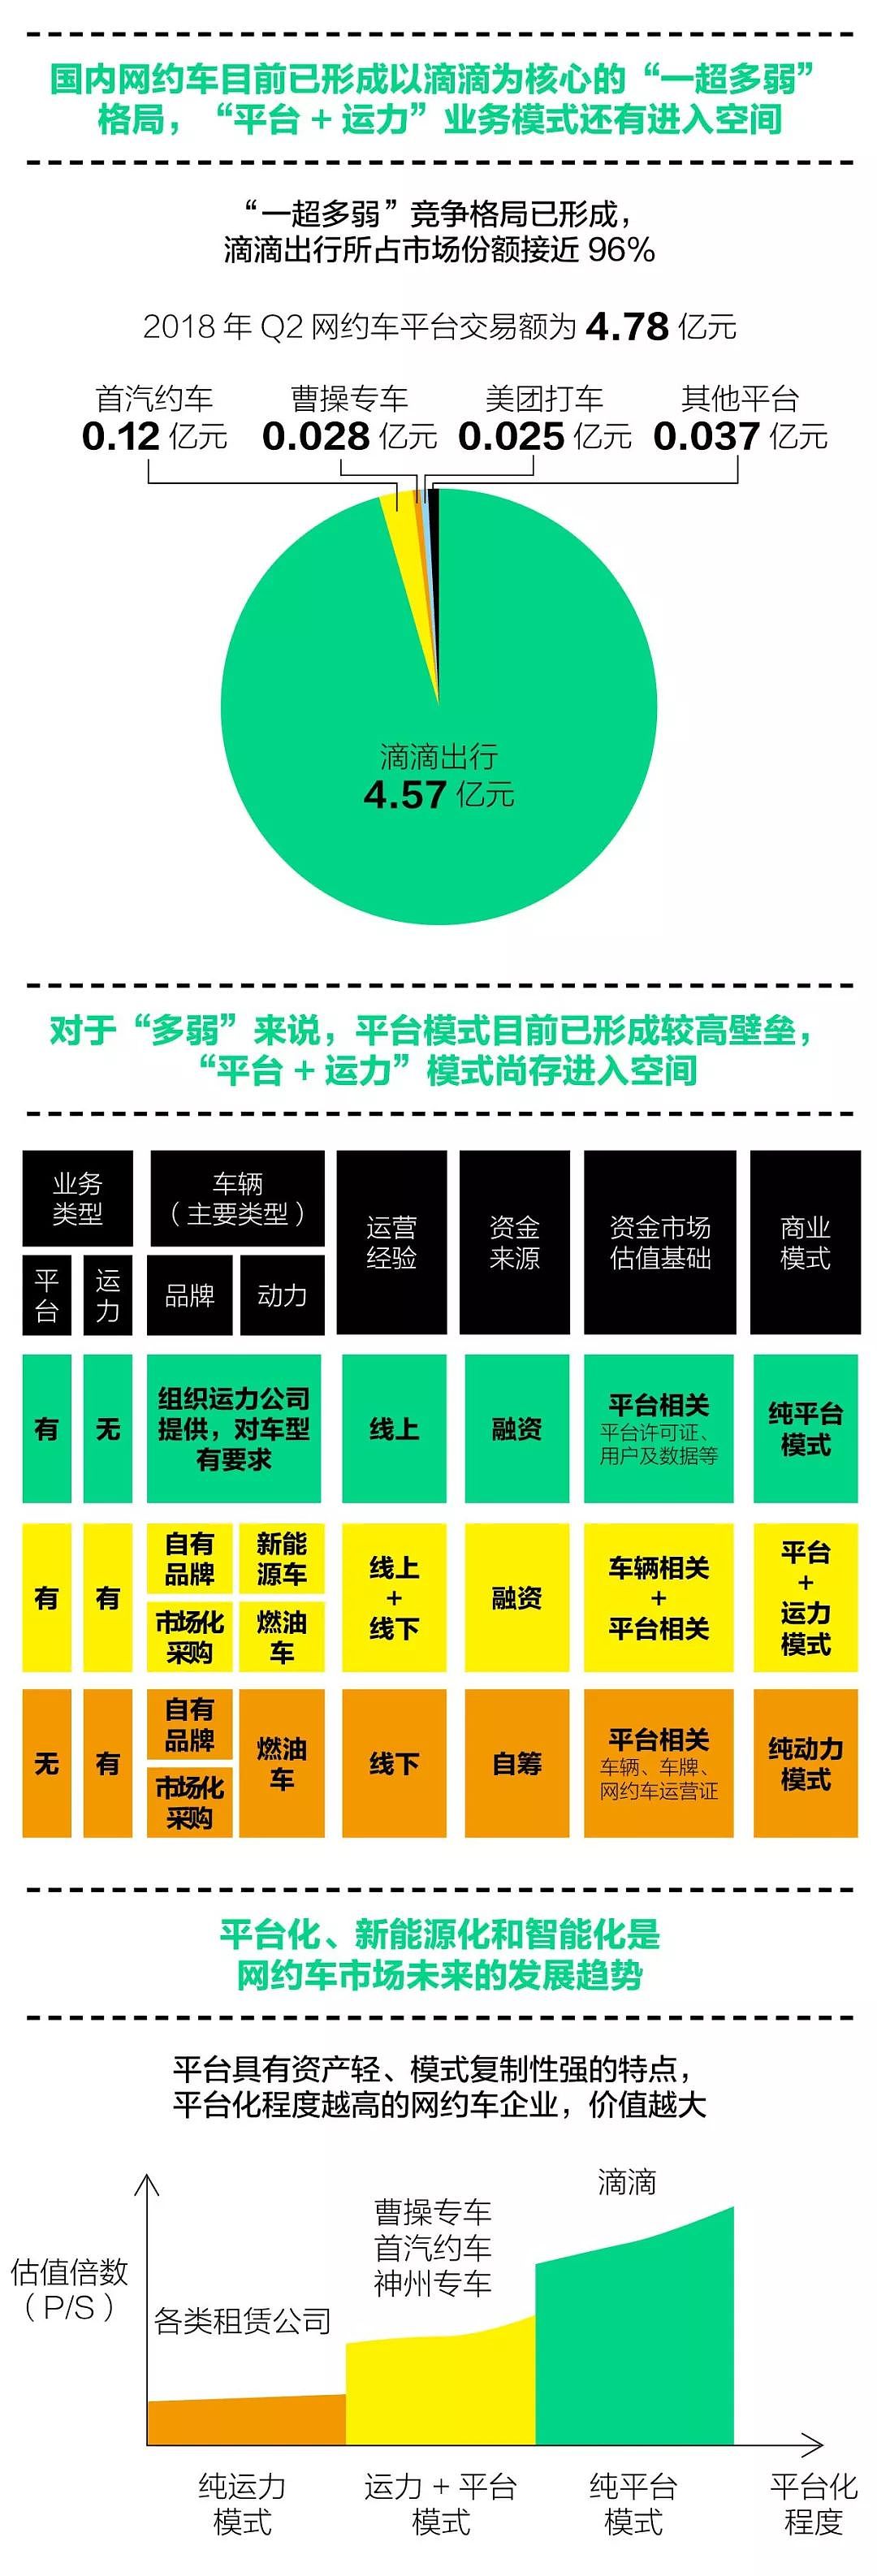 8点1氪：QQ新版本将实现注销功能；故宫火锅店3月4日起暂停营业；滴滴试行“选择路线”功能 - 13